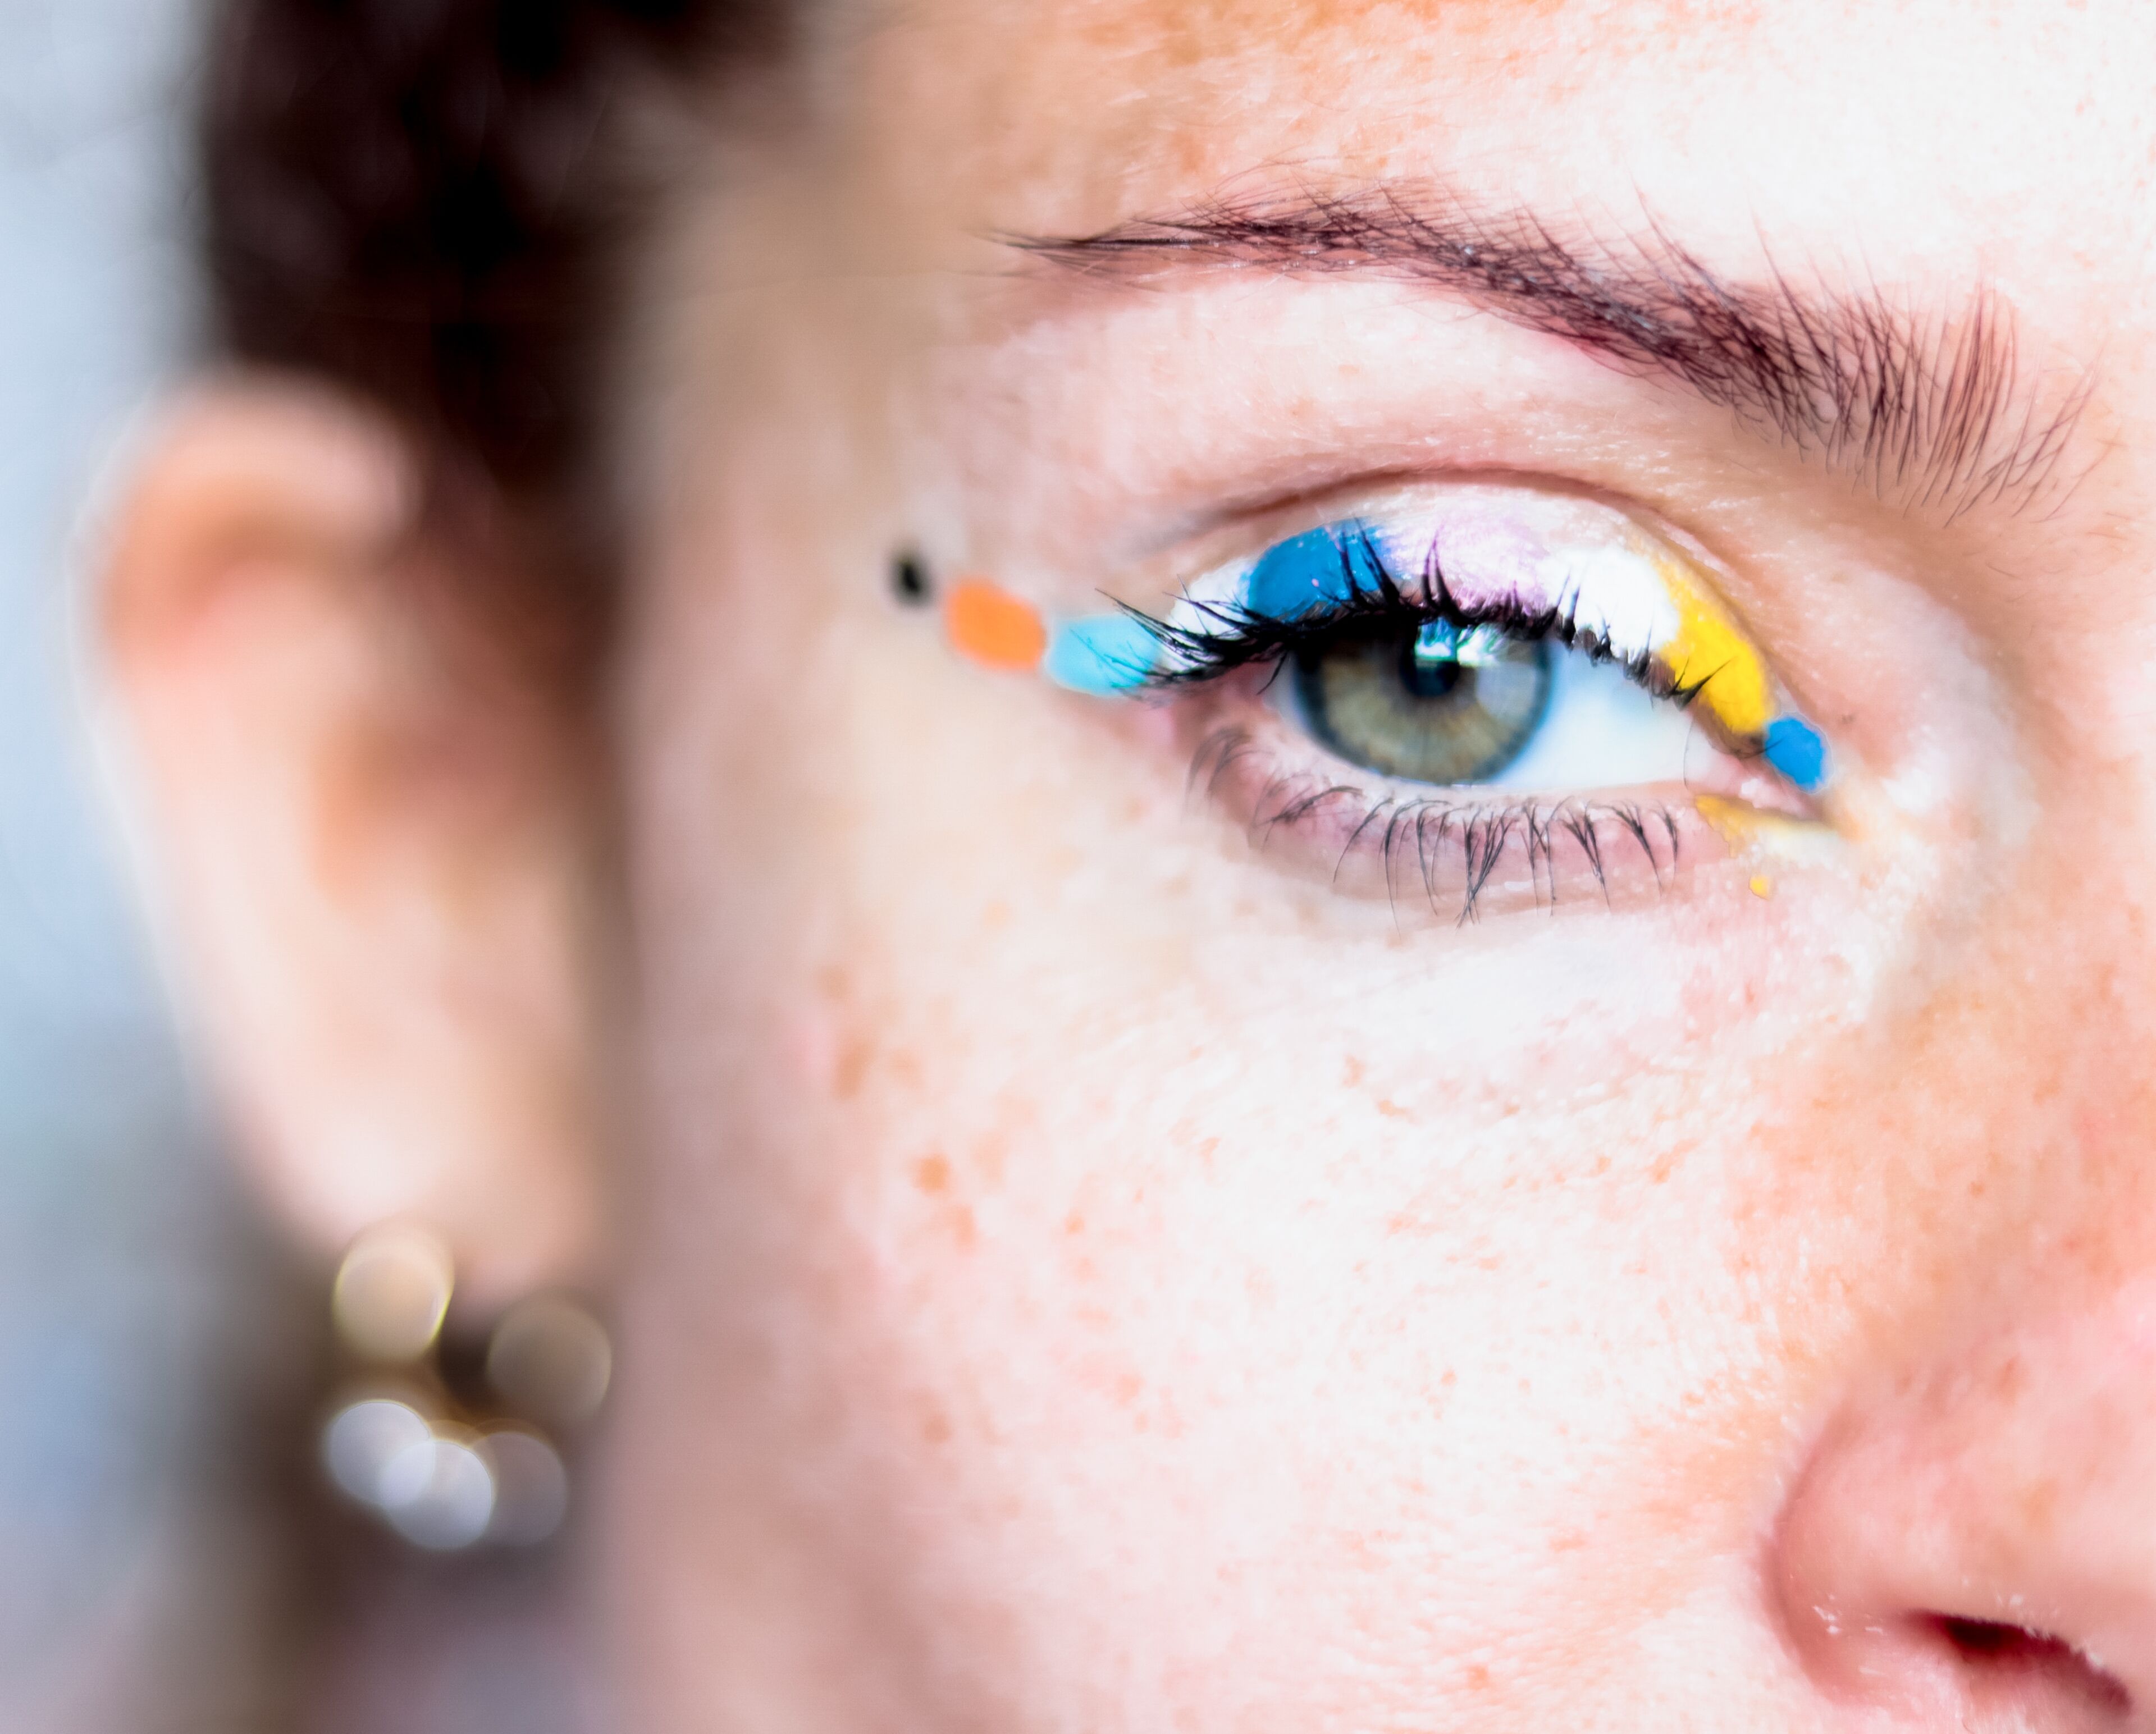 Primer plano del ojo de una persona con delineador artístico en tonos vibrantes de azul, amarillo y naranja.